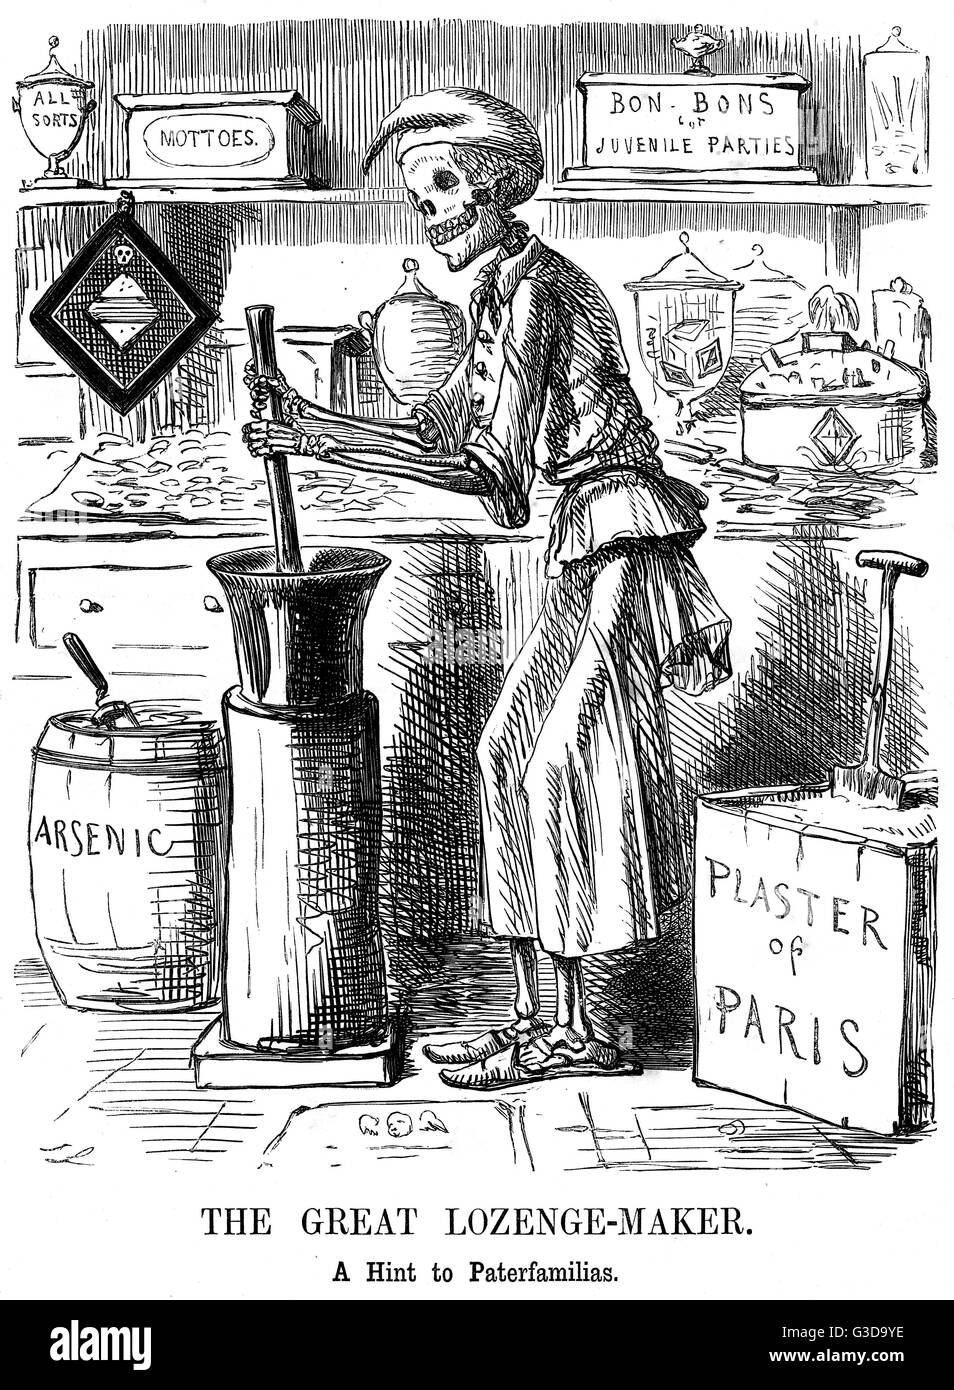 Die große Raute-Maker - ein Hinweis auf Paterfamilias.  Cartoon von John Leech in Anspielung auf die Bradford Sweet Vergiftungen von 1858, Punch, dargestellt durch ein Skelett des Todes mischen Süßigkeiten aus Gips und Arsen.  Die 1858 Bradford Süßigkeiten poi Stockfoto